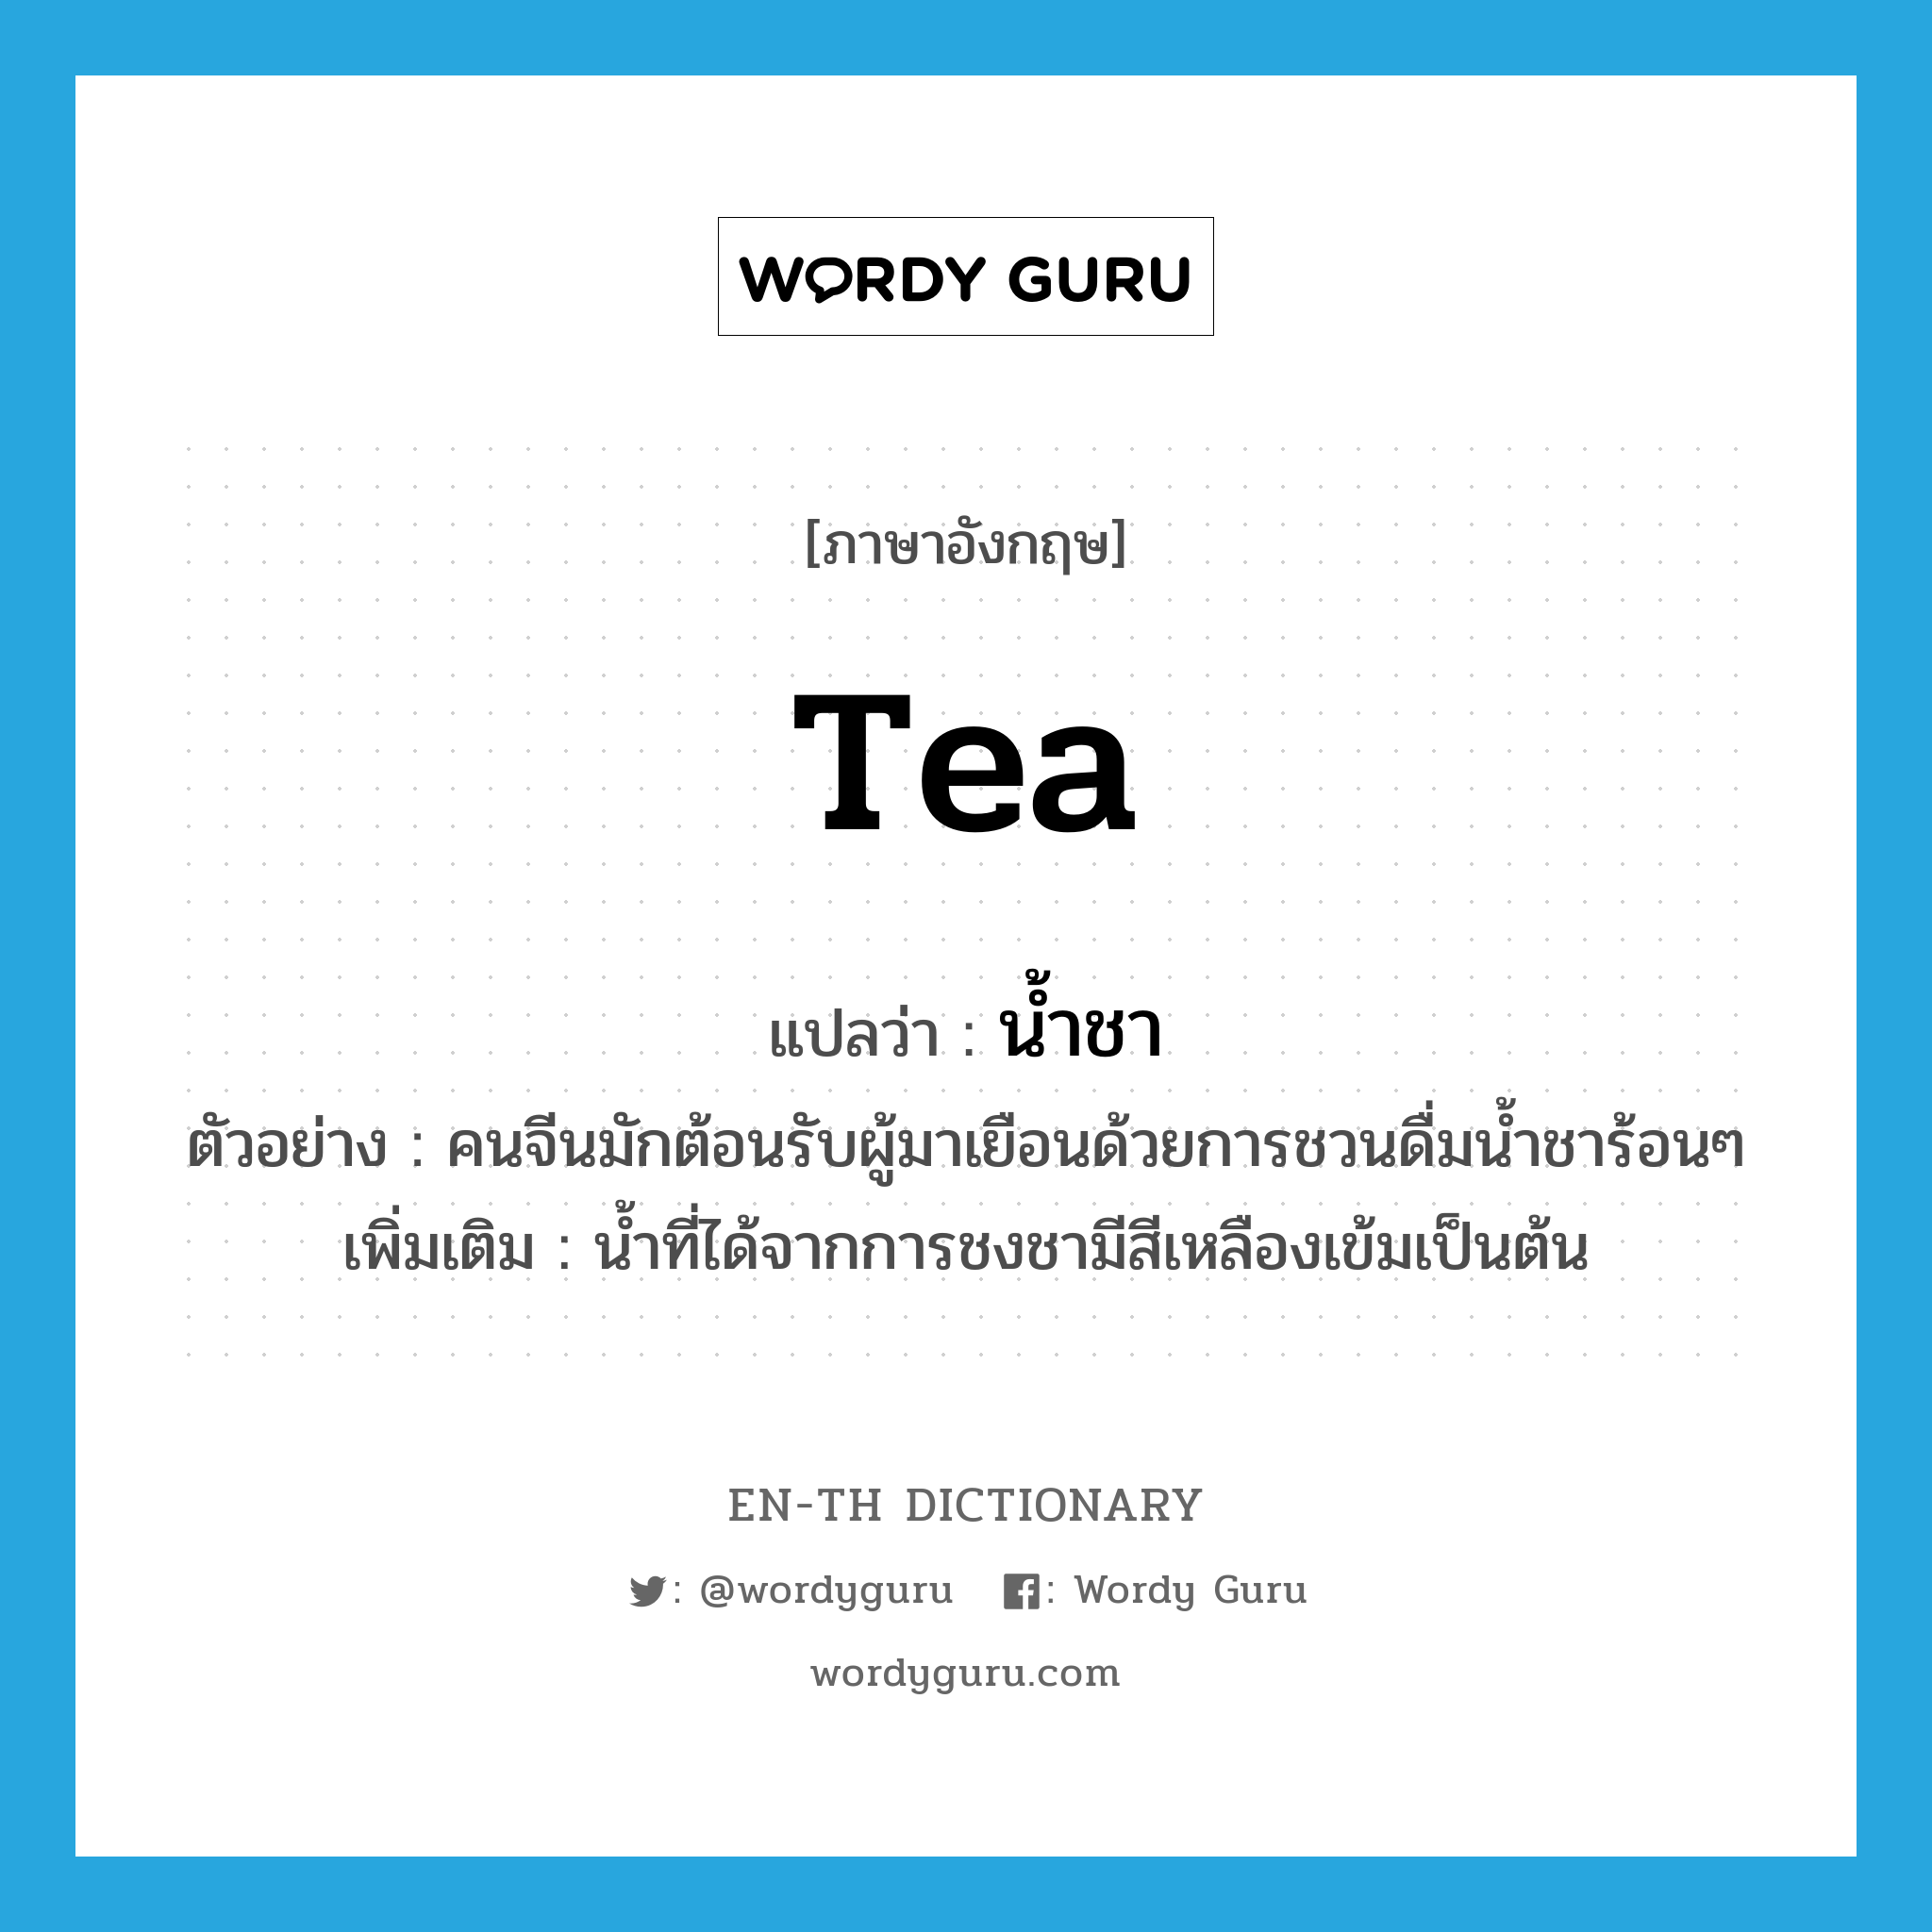 น้ำชา ภาษาอังกฤษ?, คำศัพท์ภาษาอังกฤษ น้ำชา แปลว่า tea ประเภท N ตัวอย่าง คนจีนมักต้อนรับผู้มาเยือนด้วยการชวนดื่มน้ำชาร้อนๆ เพิ่มเติม น้ำที่ได้จากการชงชามีสีเหลืองเข้มเป็นต้น หมวด N